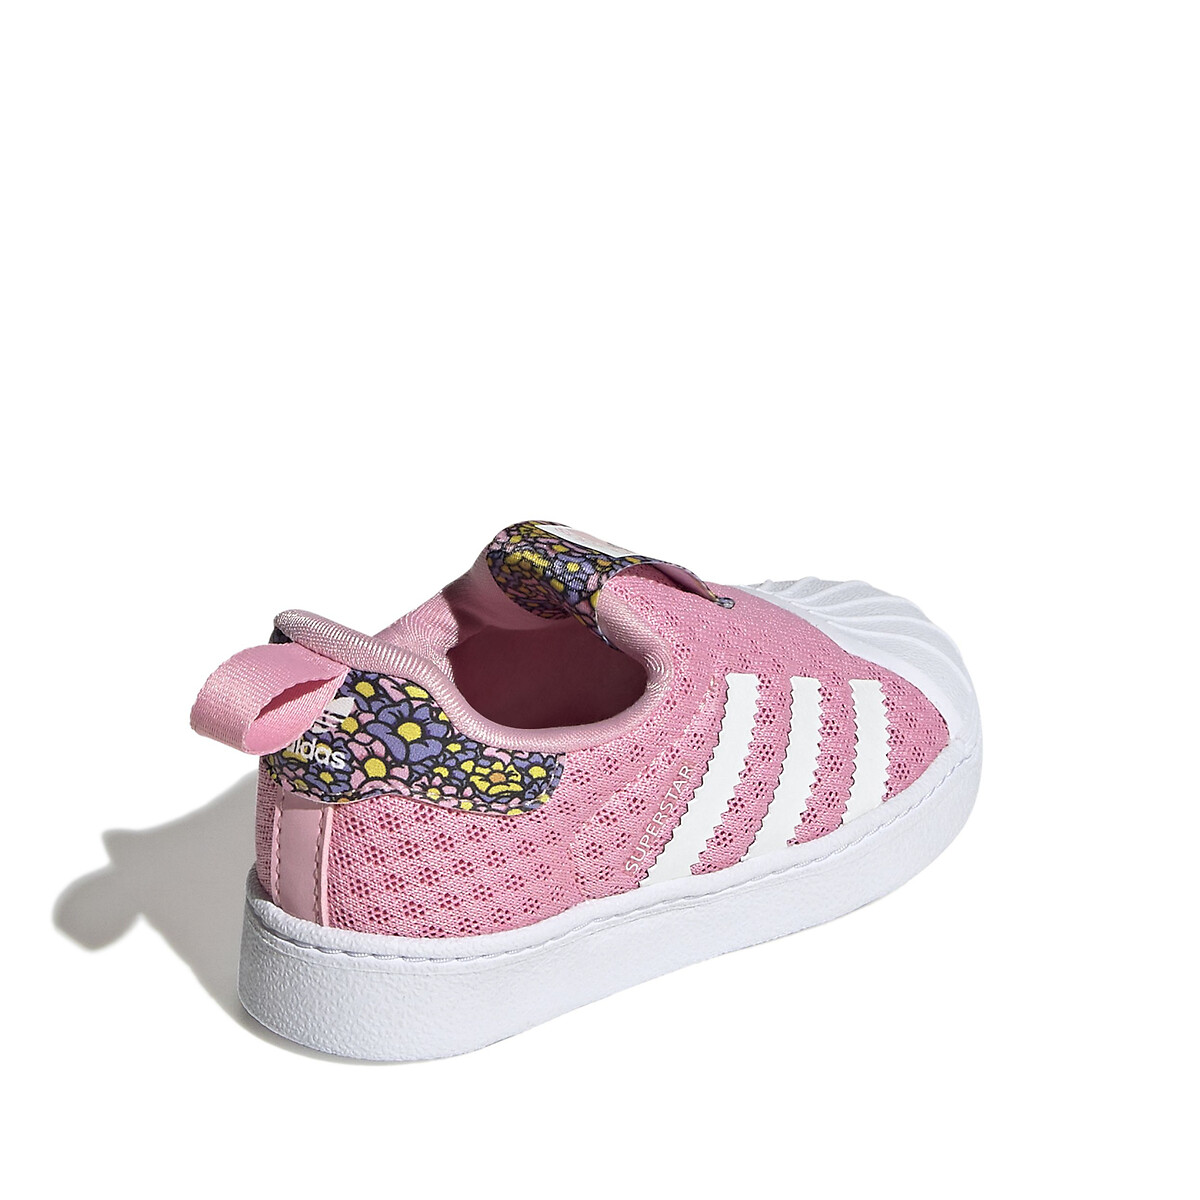 module Doorzichtig Meerdere Sneakers superstar roze Adidas Originals | La Redoute